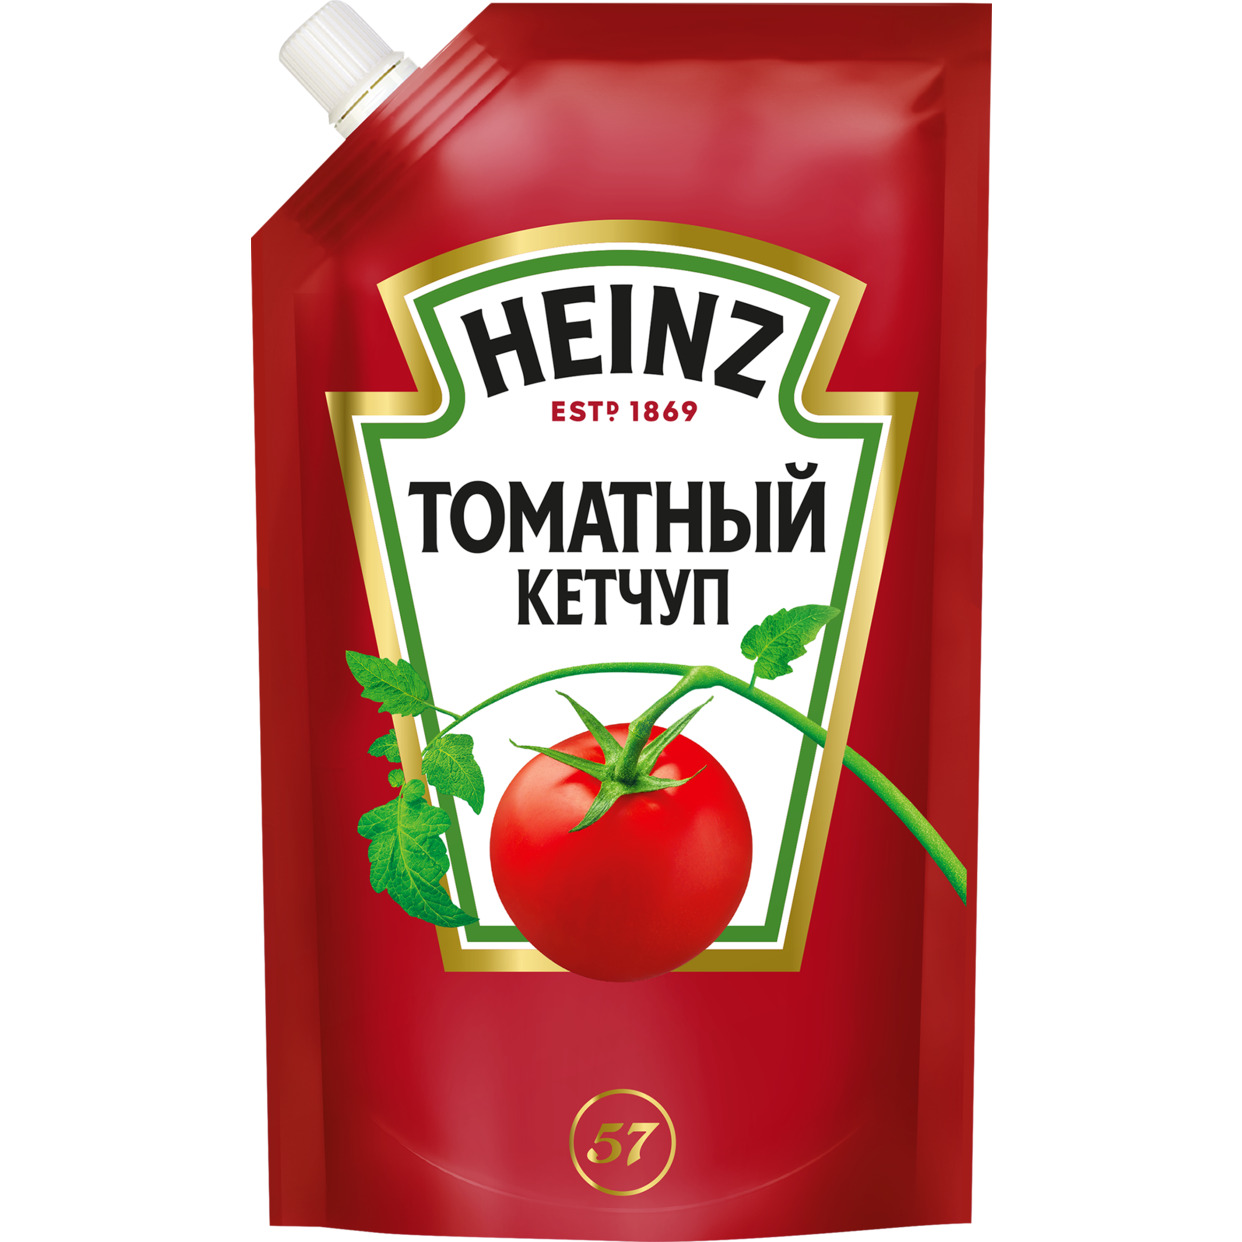 Кетчуп томатный Хайнц, 320 гр, дой-пак по акции в Пятерочке